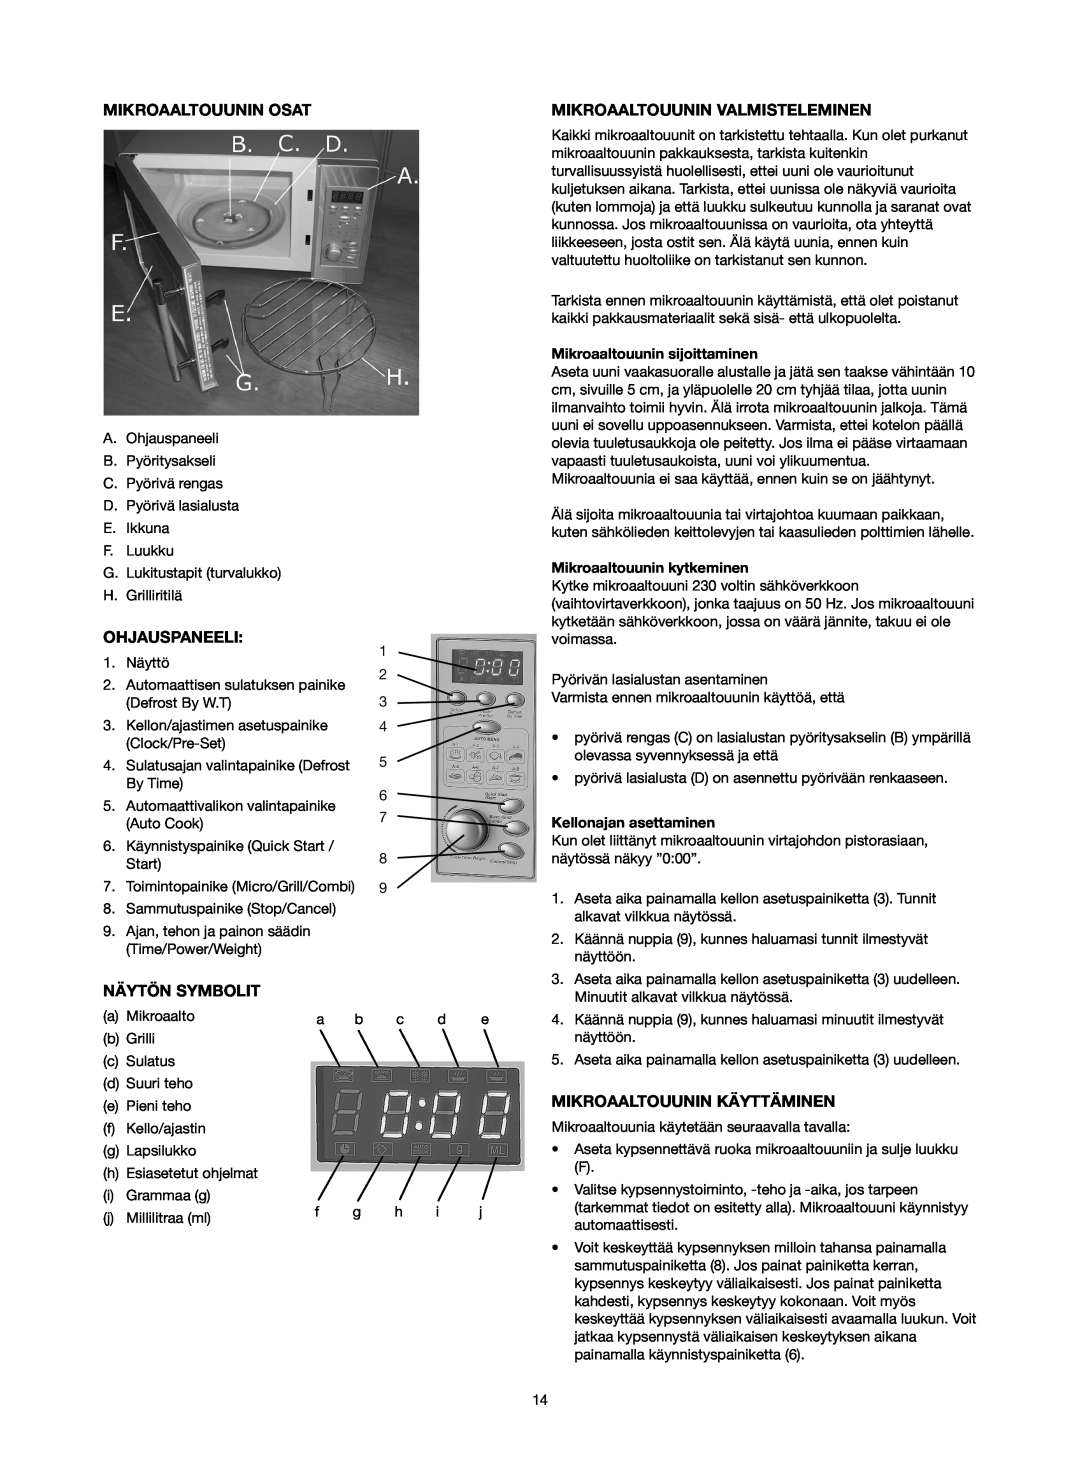 Melissa 753-089 manual Mikroaaltouunin Osat, Mikroaaltouunin Valmisteleminen, Ohjauspaneeli, Näytön Symbolit 